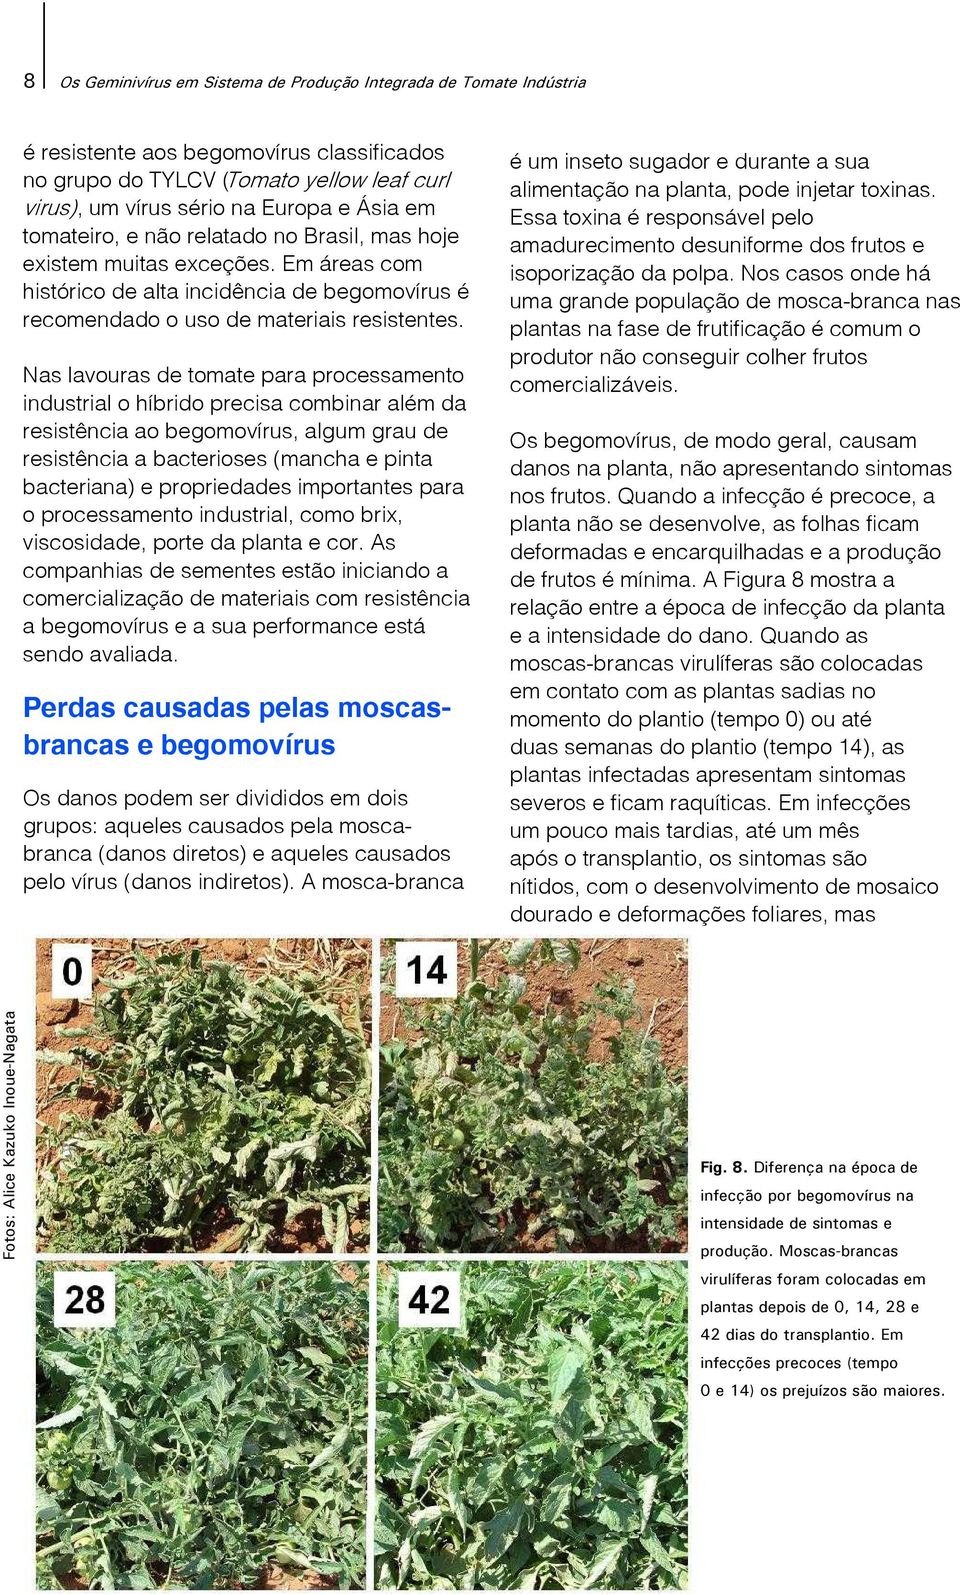 Nas lavouras de tomate para processamento industrial o híbrido precisa combinar além da resistência ao begomovírus, algum grau de resistência a bacterioses (mancha e pinta bacteriana) e propriedades